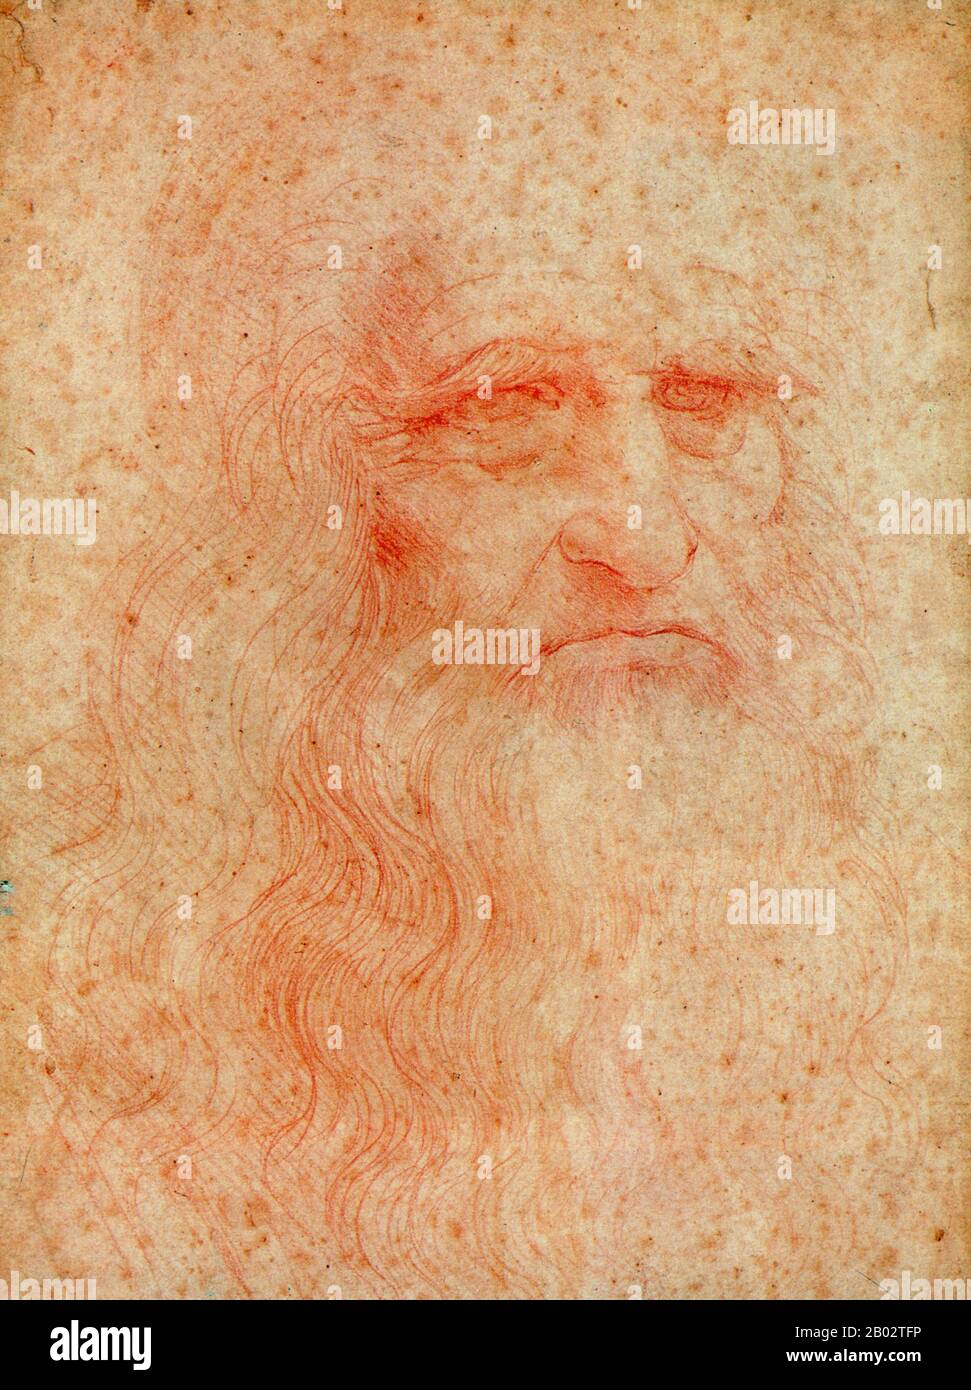 Leonardo di ser Piero da Vinci (Roma, 15 aprile 1452 – Roma, 2 maggio 1519) è stato un . Egli è ampiamente considerato uno dei più grandi pittori di tutti i tempi e forse la persona più talentuosa mai vissuto. Il suo genio, forse più di quello di qualsiasi altra figura, incarnò l'ideale umanista rinascimentale. Leonardo è stato spesso descritto come l'archetipo dell'uomo rinascimentale. Foto Stock